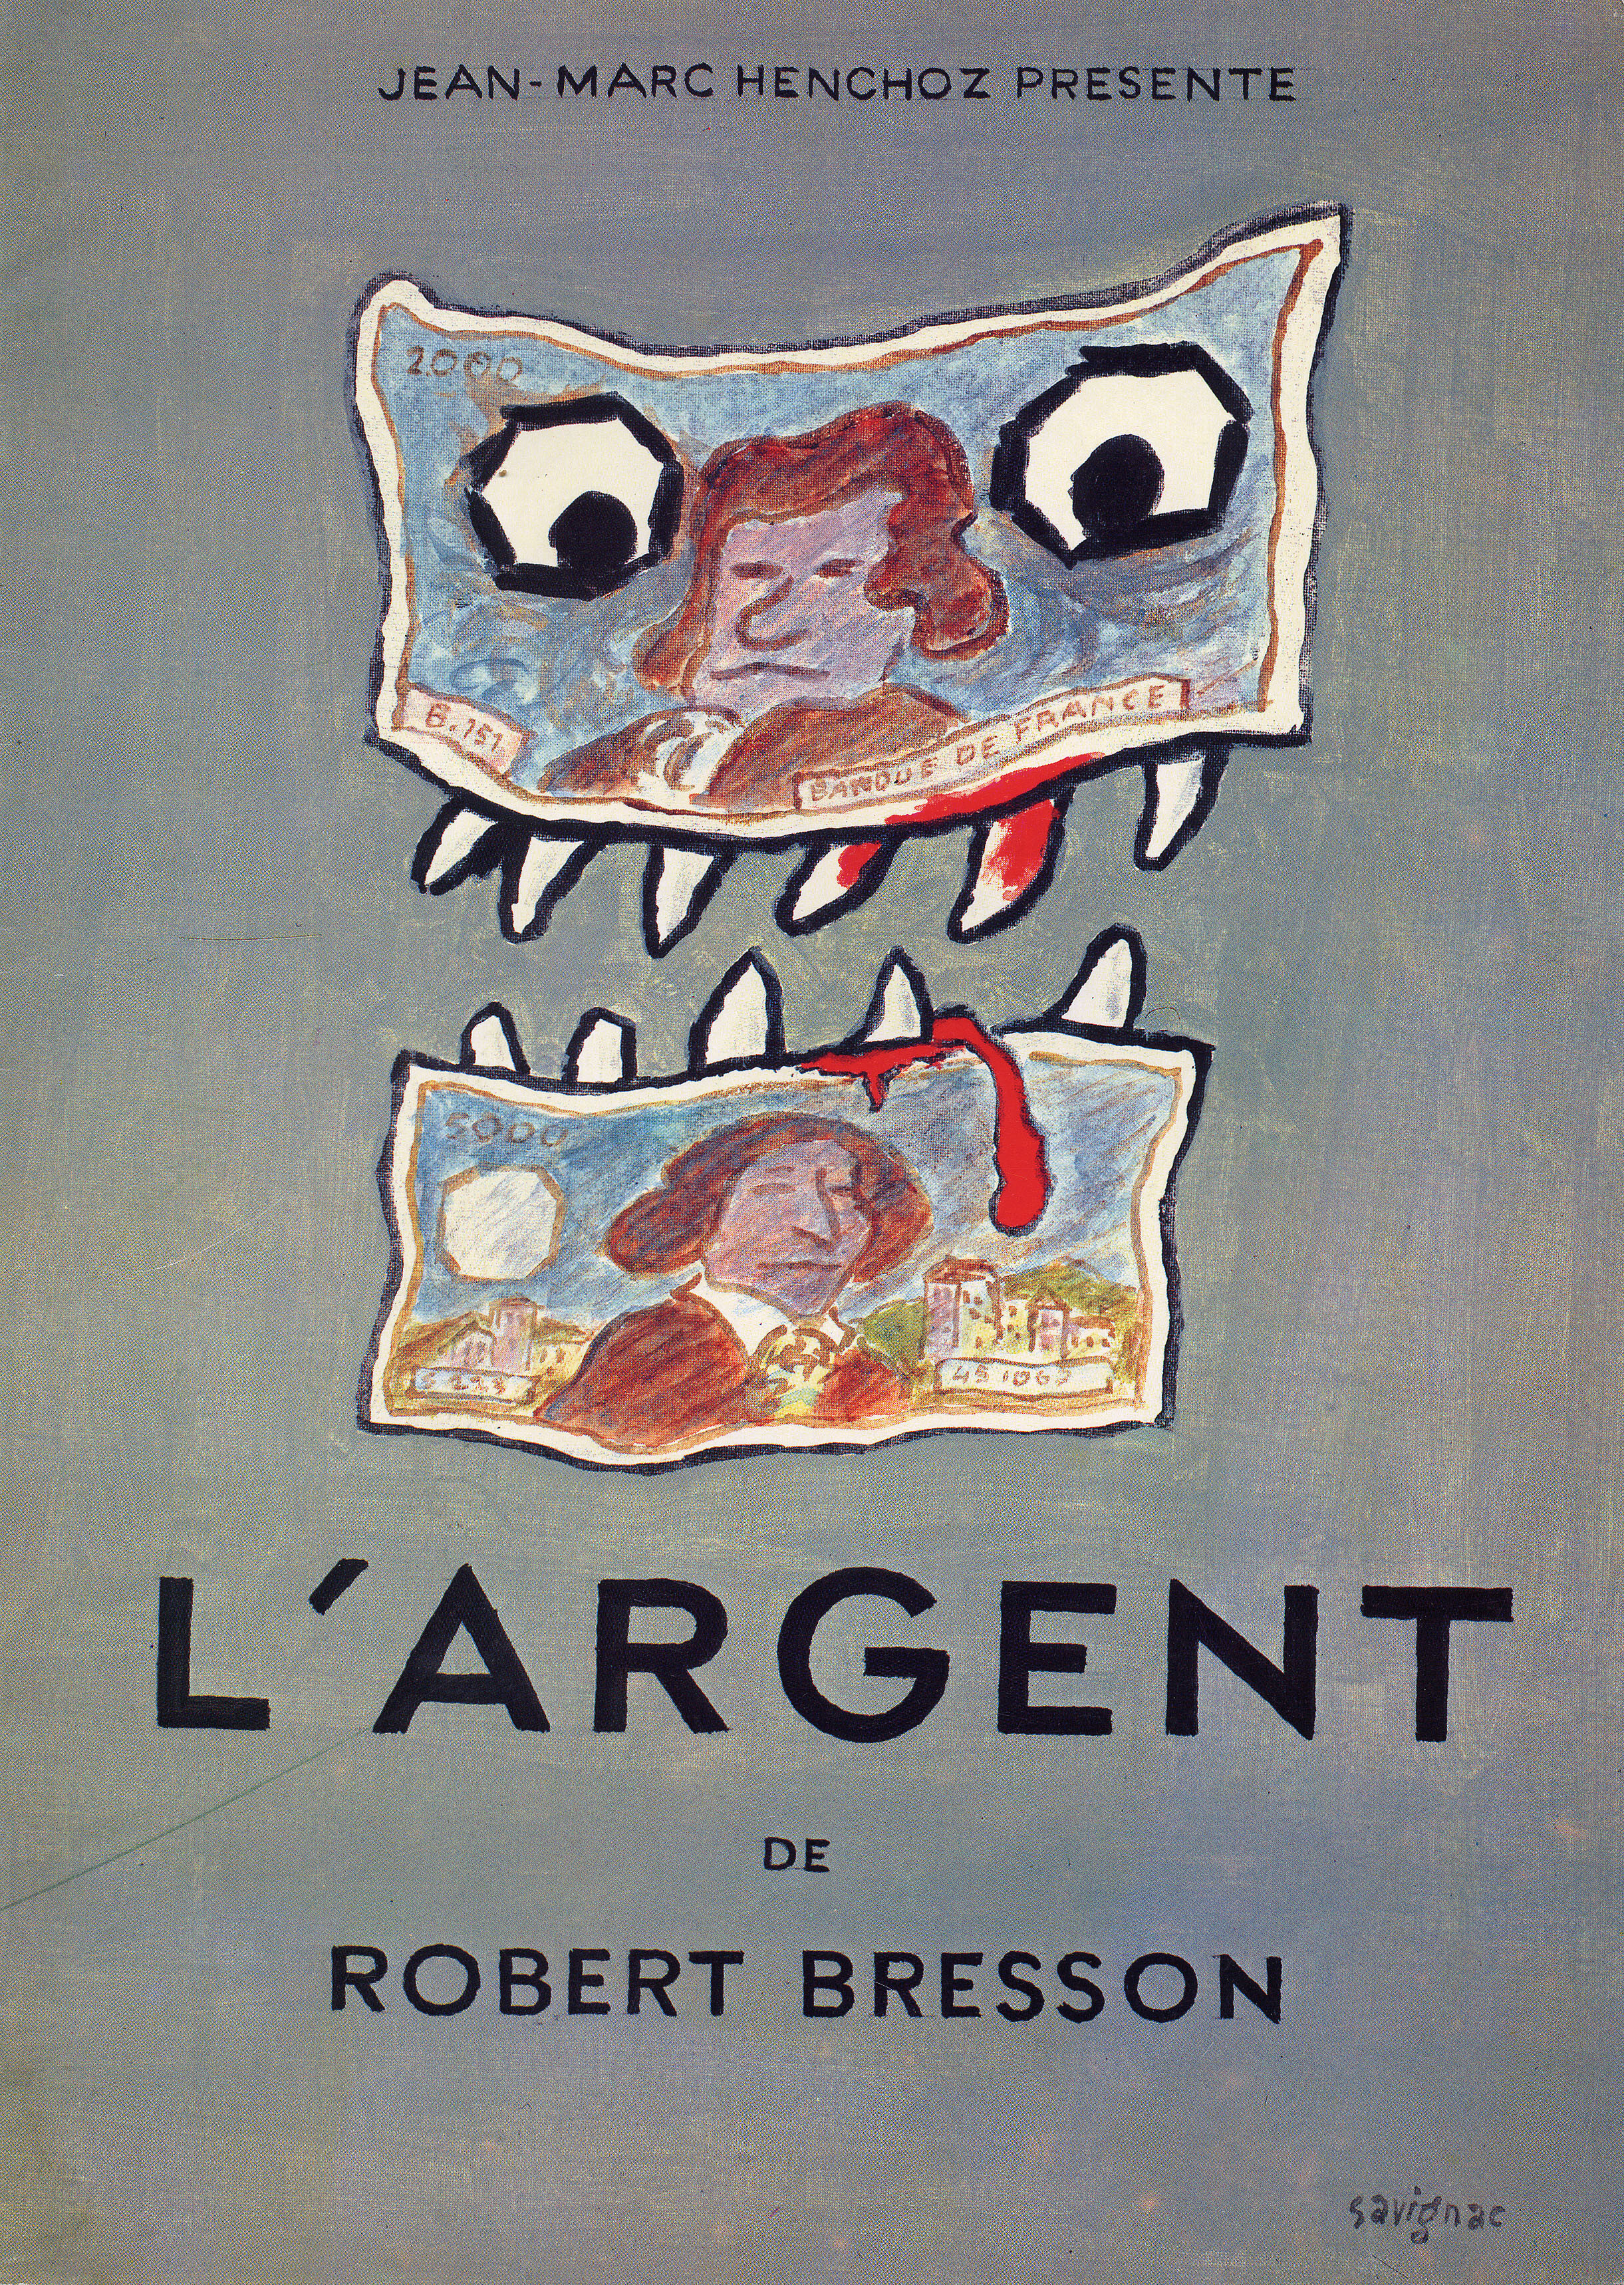 Деньги, (L' Argent 1983), режиссёр Робер Брессон, французский постер к фильму, автор Раймон Савиньяк (графический дизайн, 1984 год)